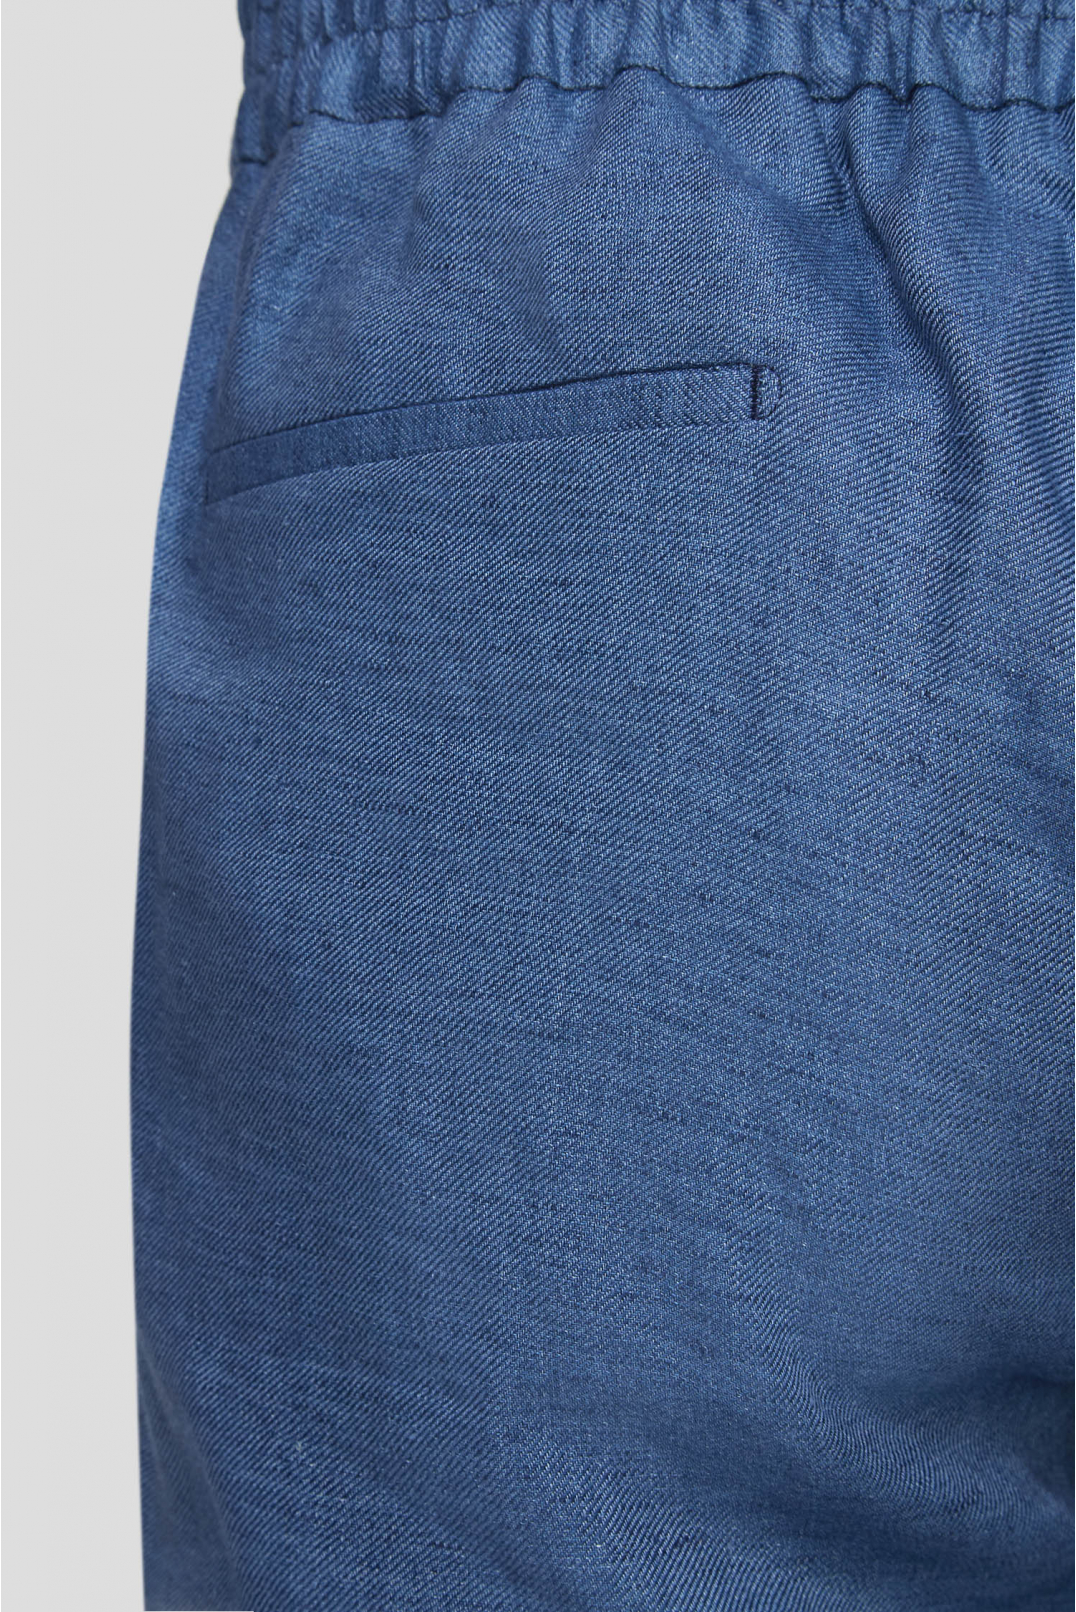 Чоловічі сині лляні брюки - 4